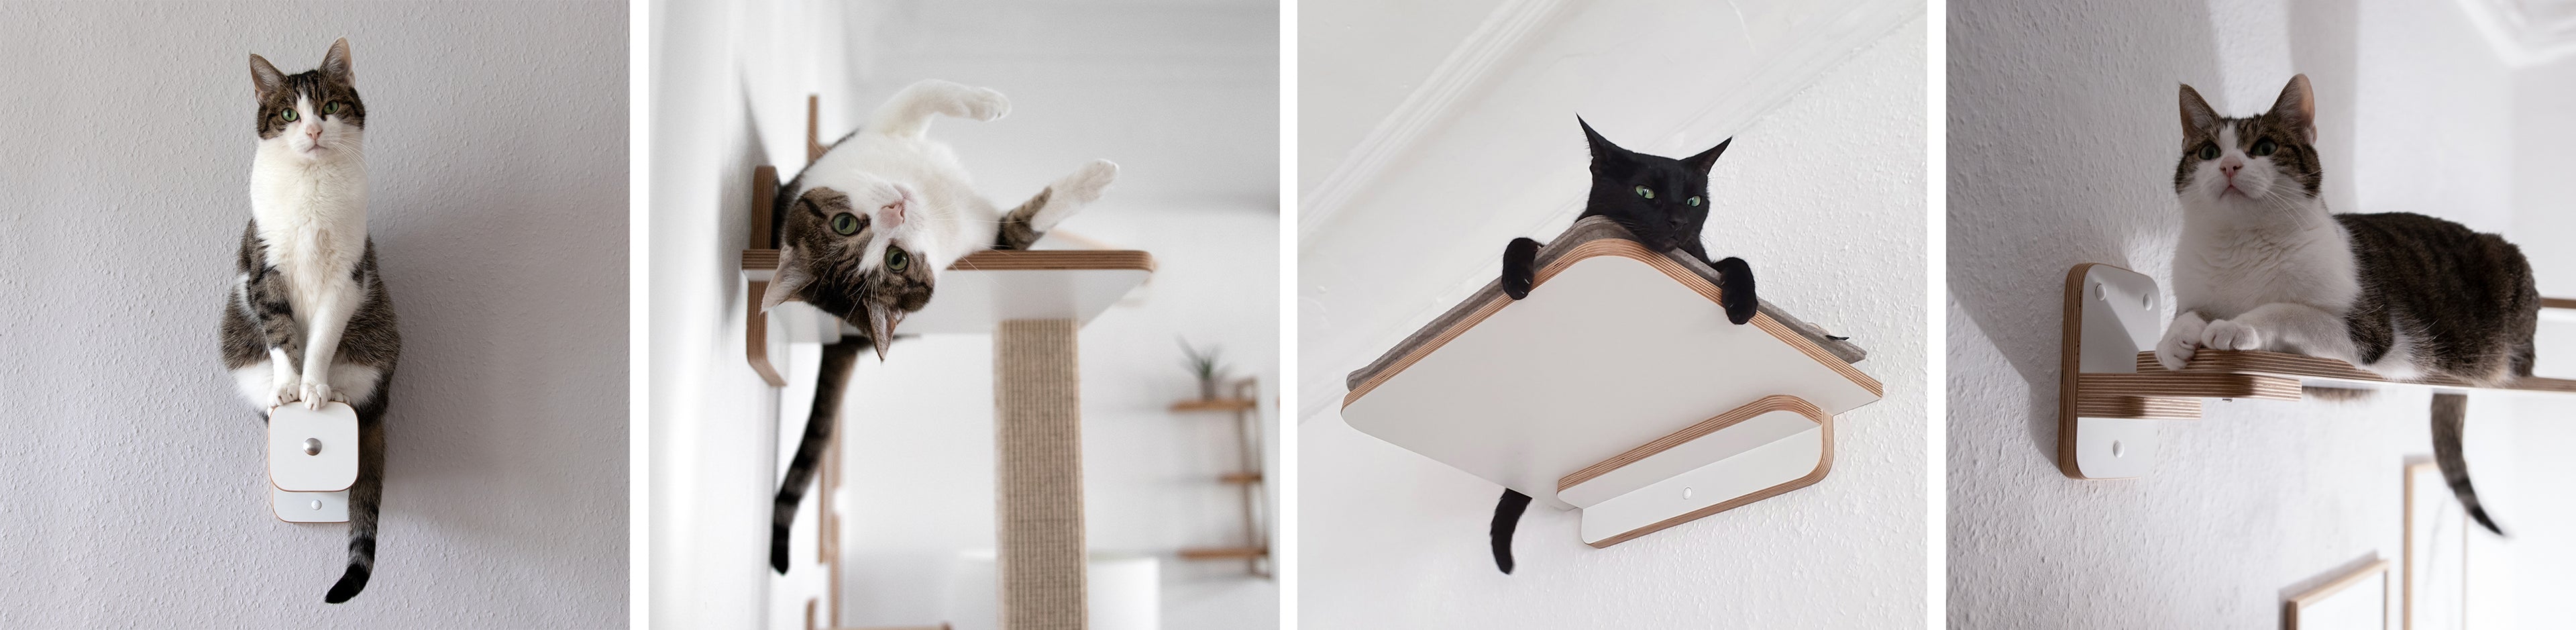 Katzenmöbel für die Wandmontage werden gezeigt - eine Kletterstufe, ein Wandkratzbaum, eine Wandliege & ein Catwalk. Die Katzenmöbel werden in Benutzung von einem getigerten & schwarzen Kater abgebildet. 